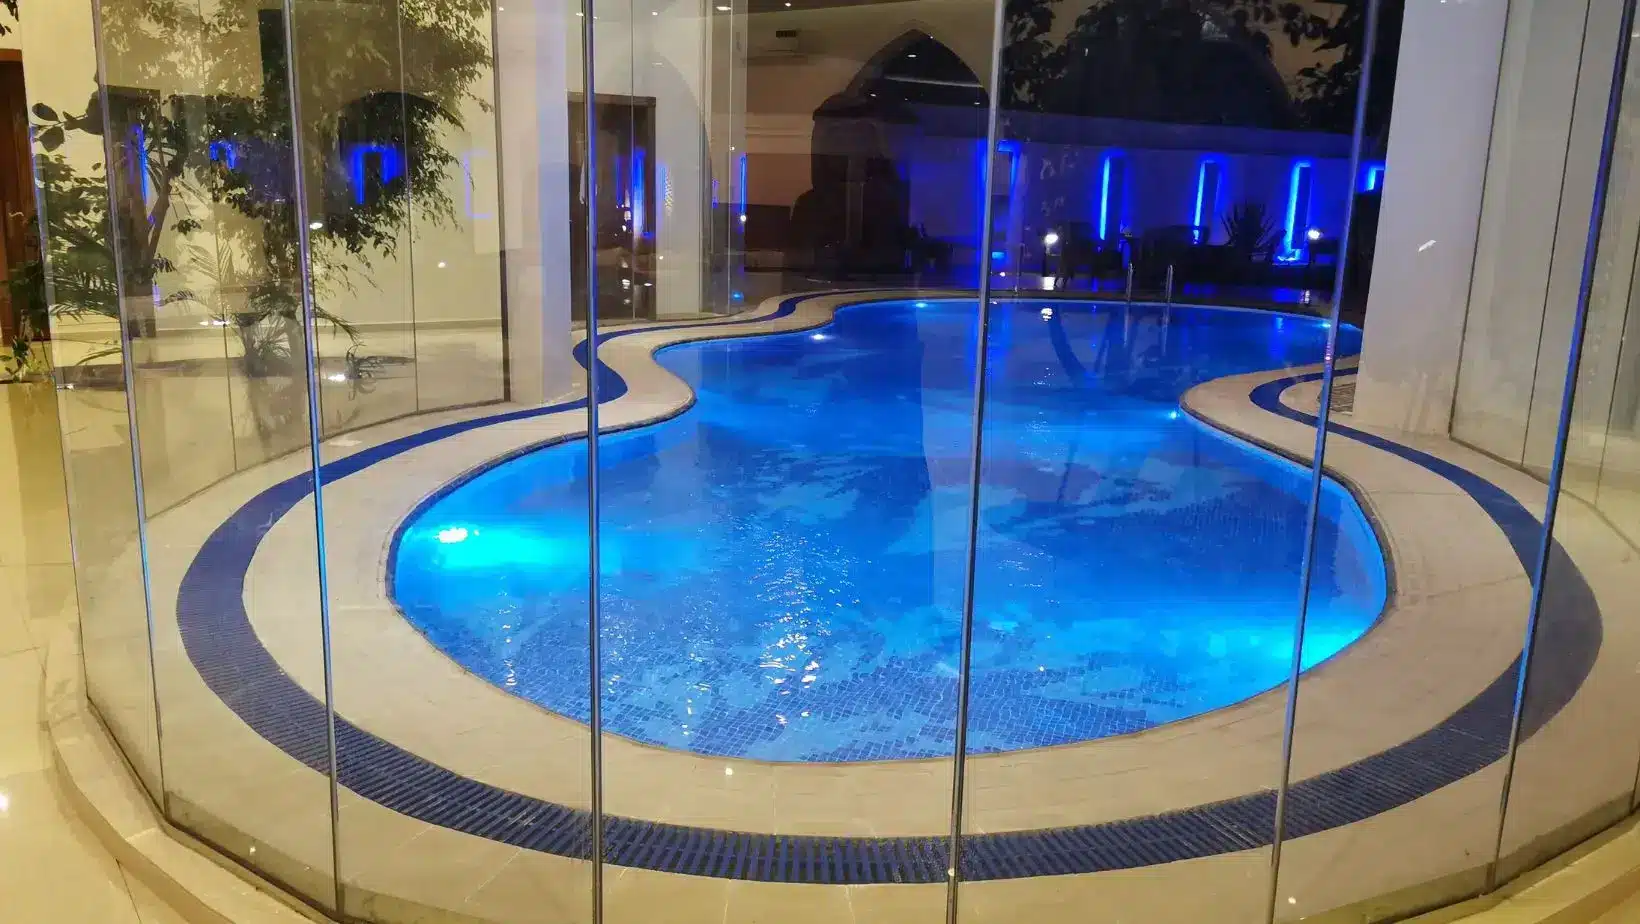 منتجع الجبيلة بالرياض، وحدات فندقية للإيجار، Al Jubailaا Resort in Riyadh, hotel units for rent